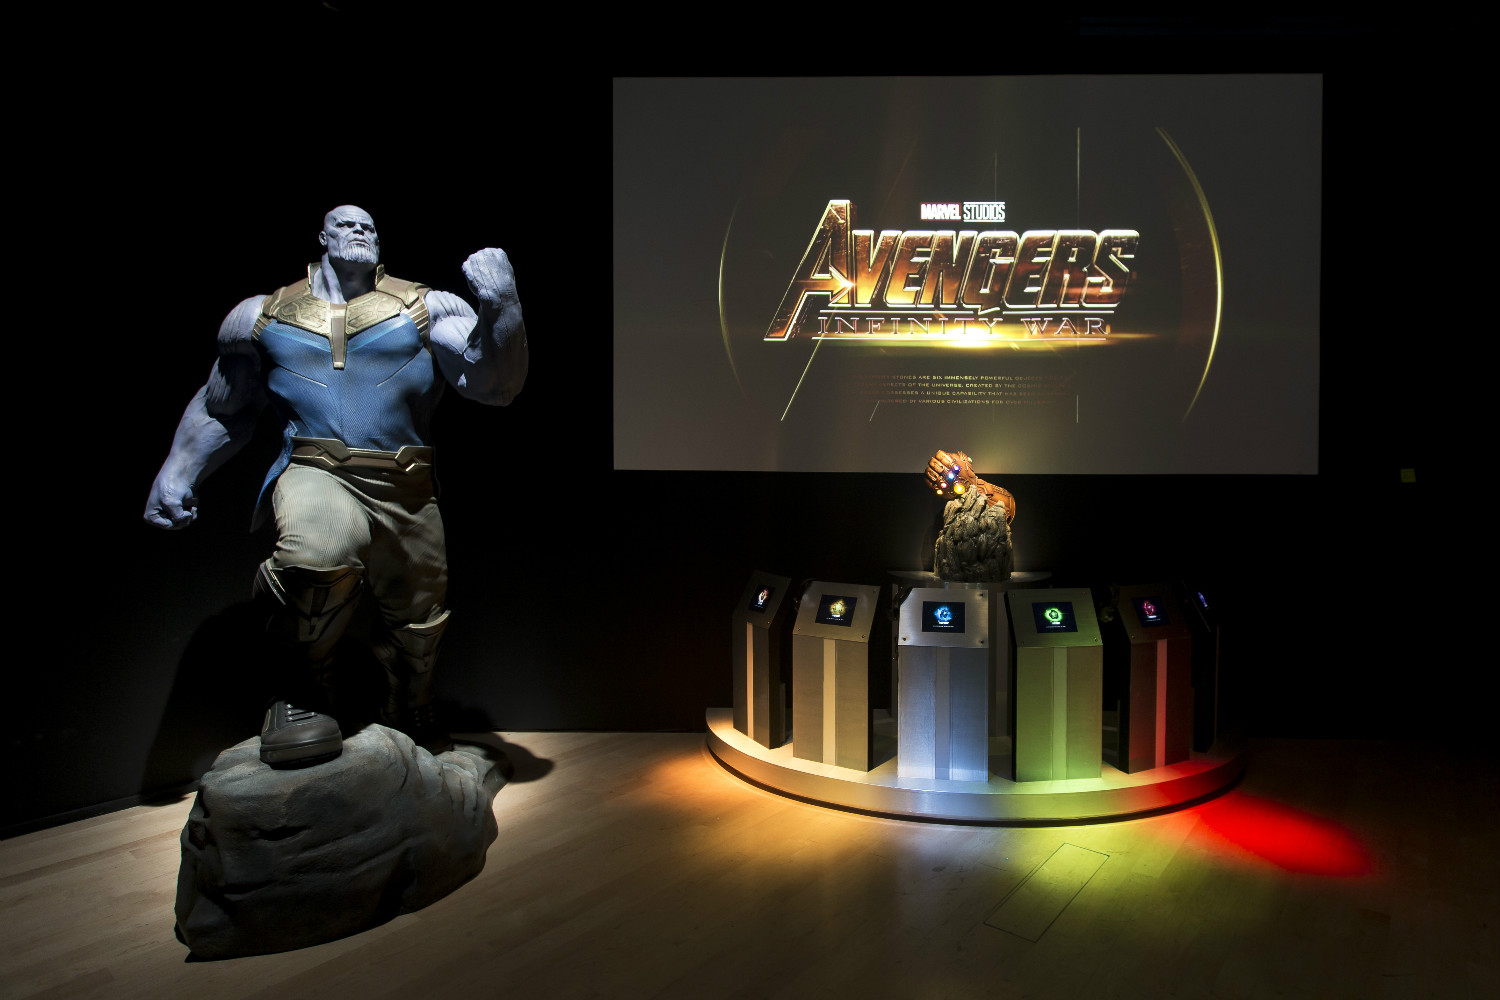 Marvel Studios Exhibition 3